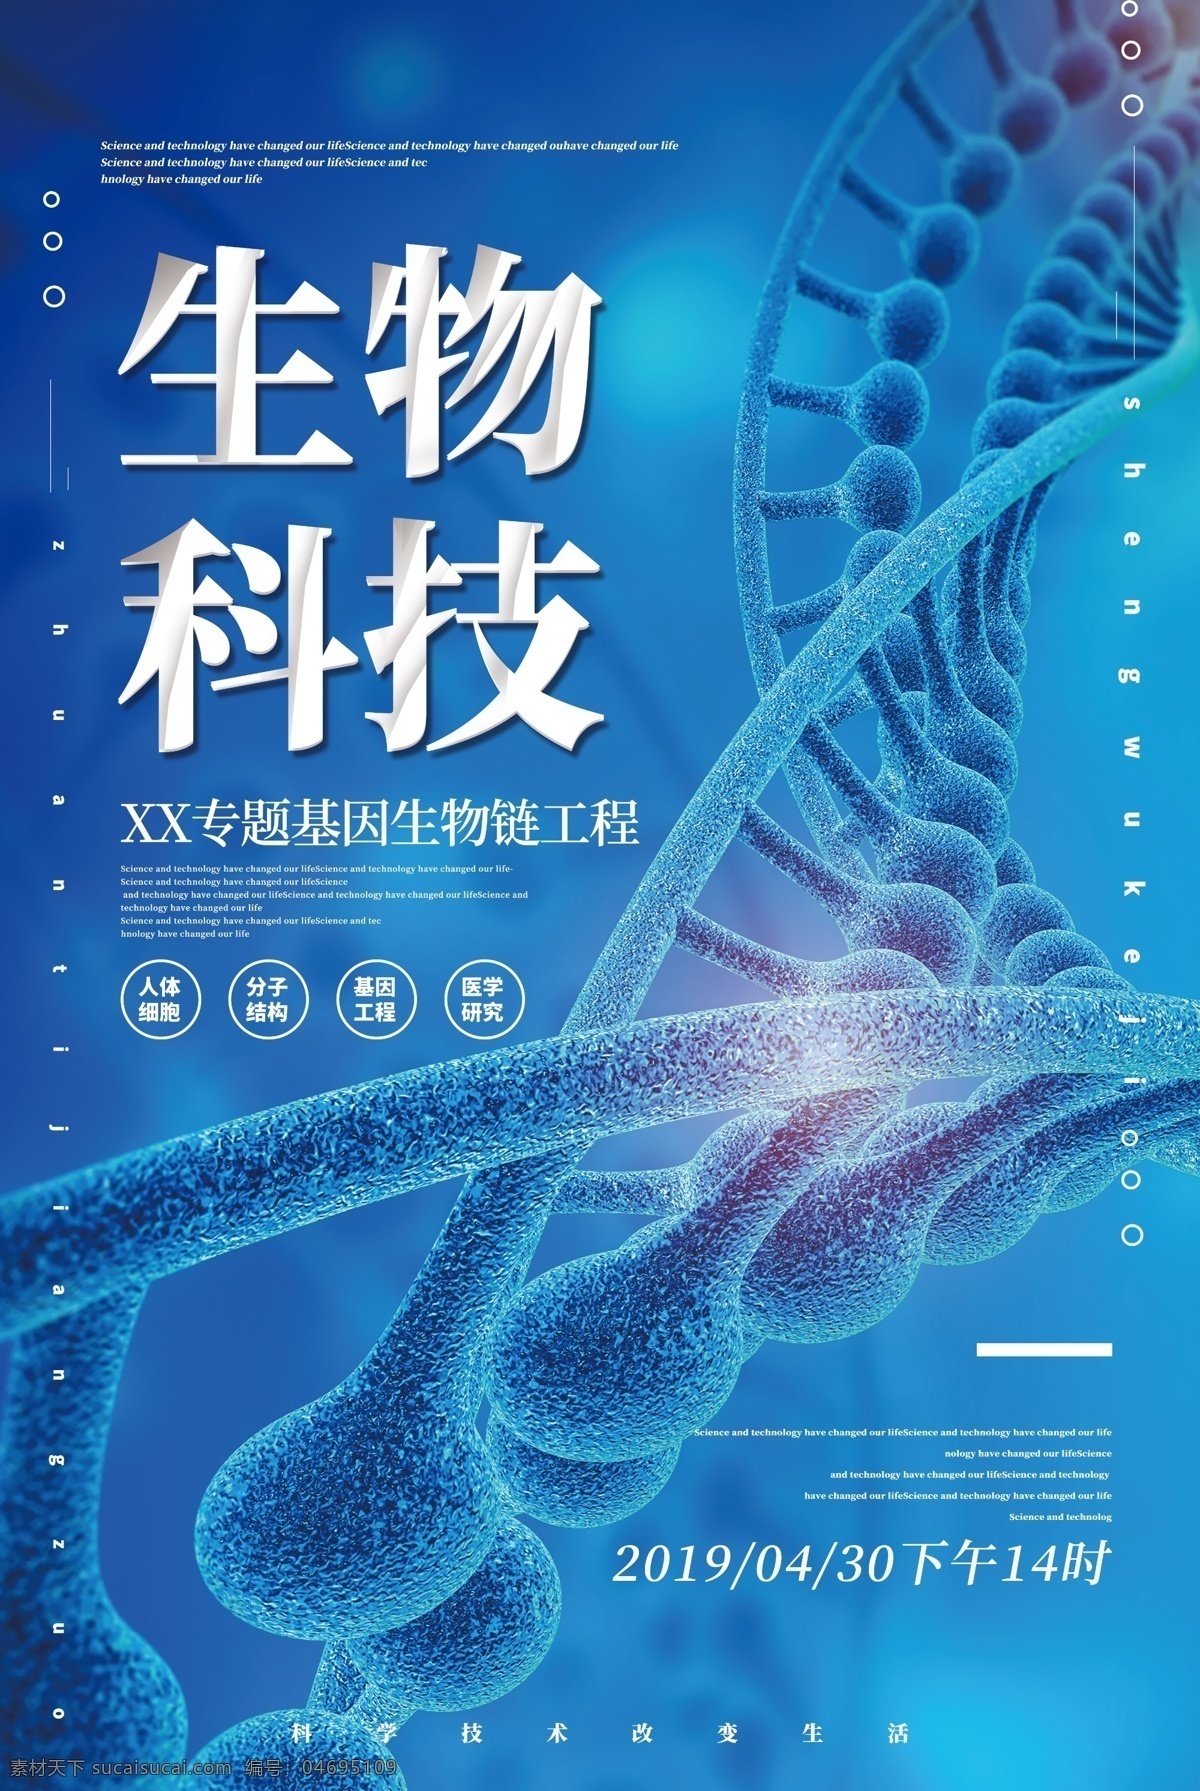 生物科技 医药 医学 宣传海报 生物 科技 宣传 海报